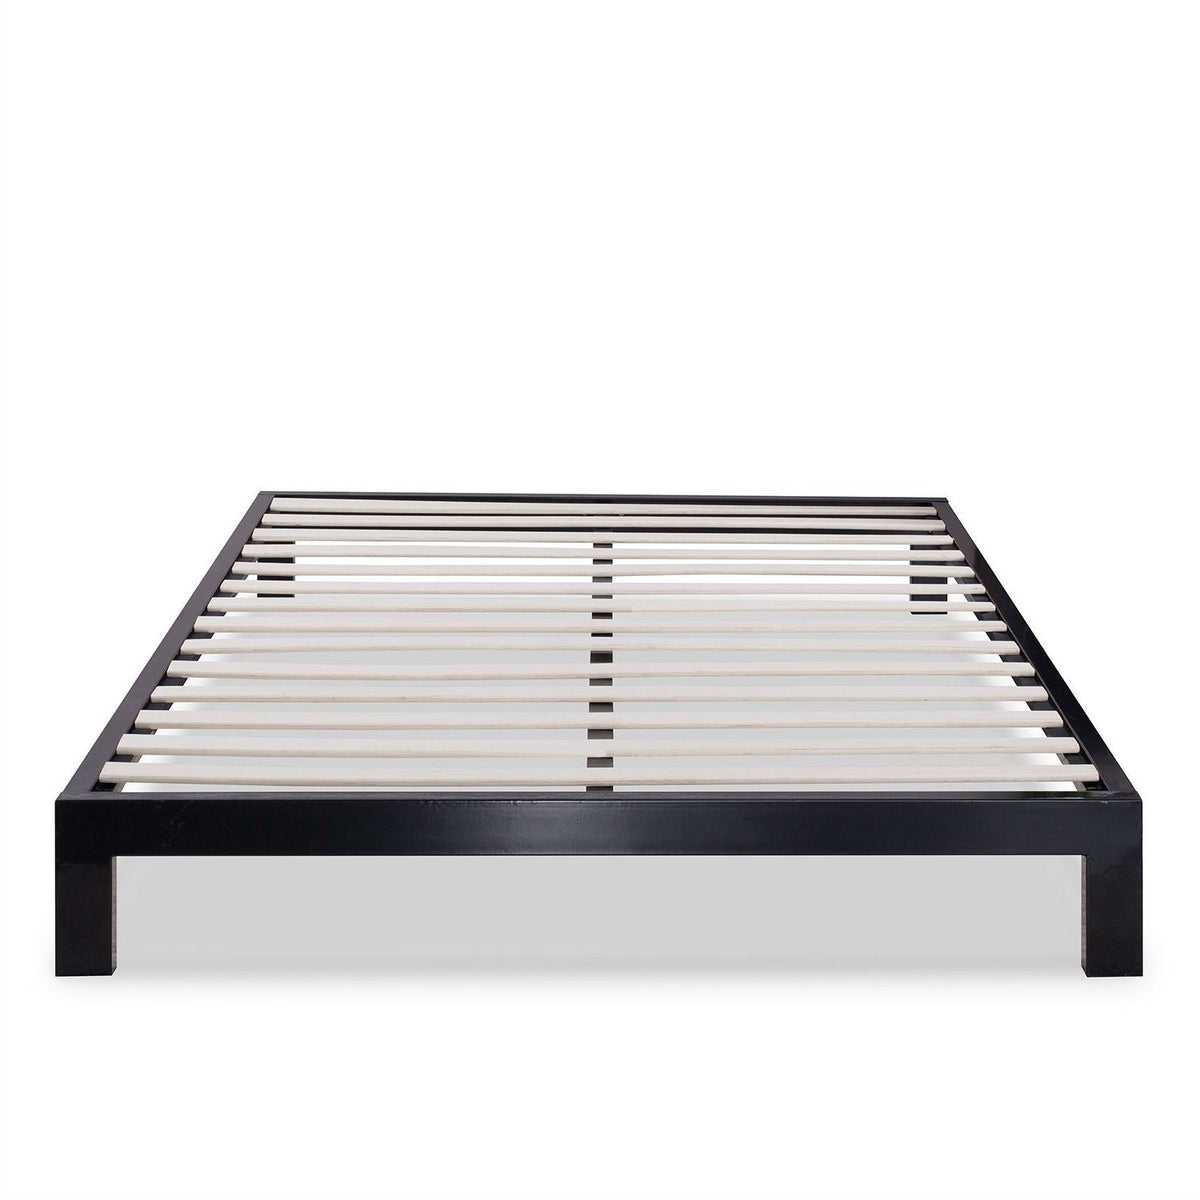 King size Modern Black Metal Platform Bed Frame with Wood Slats